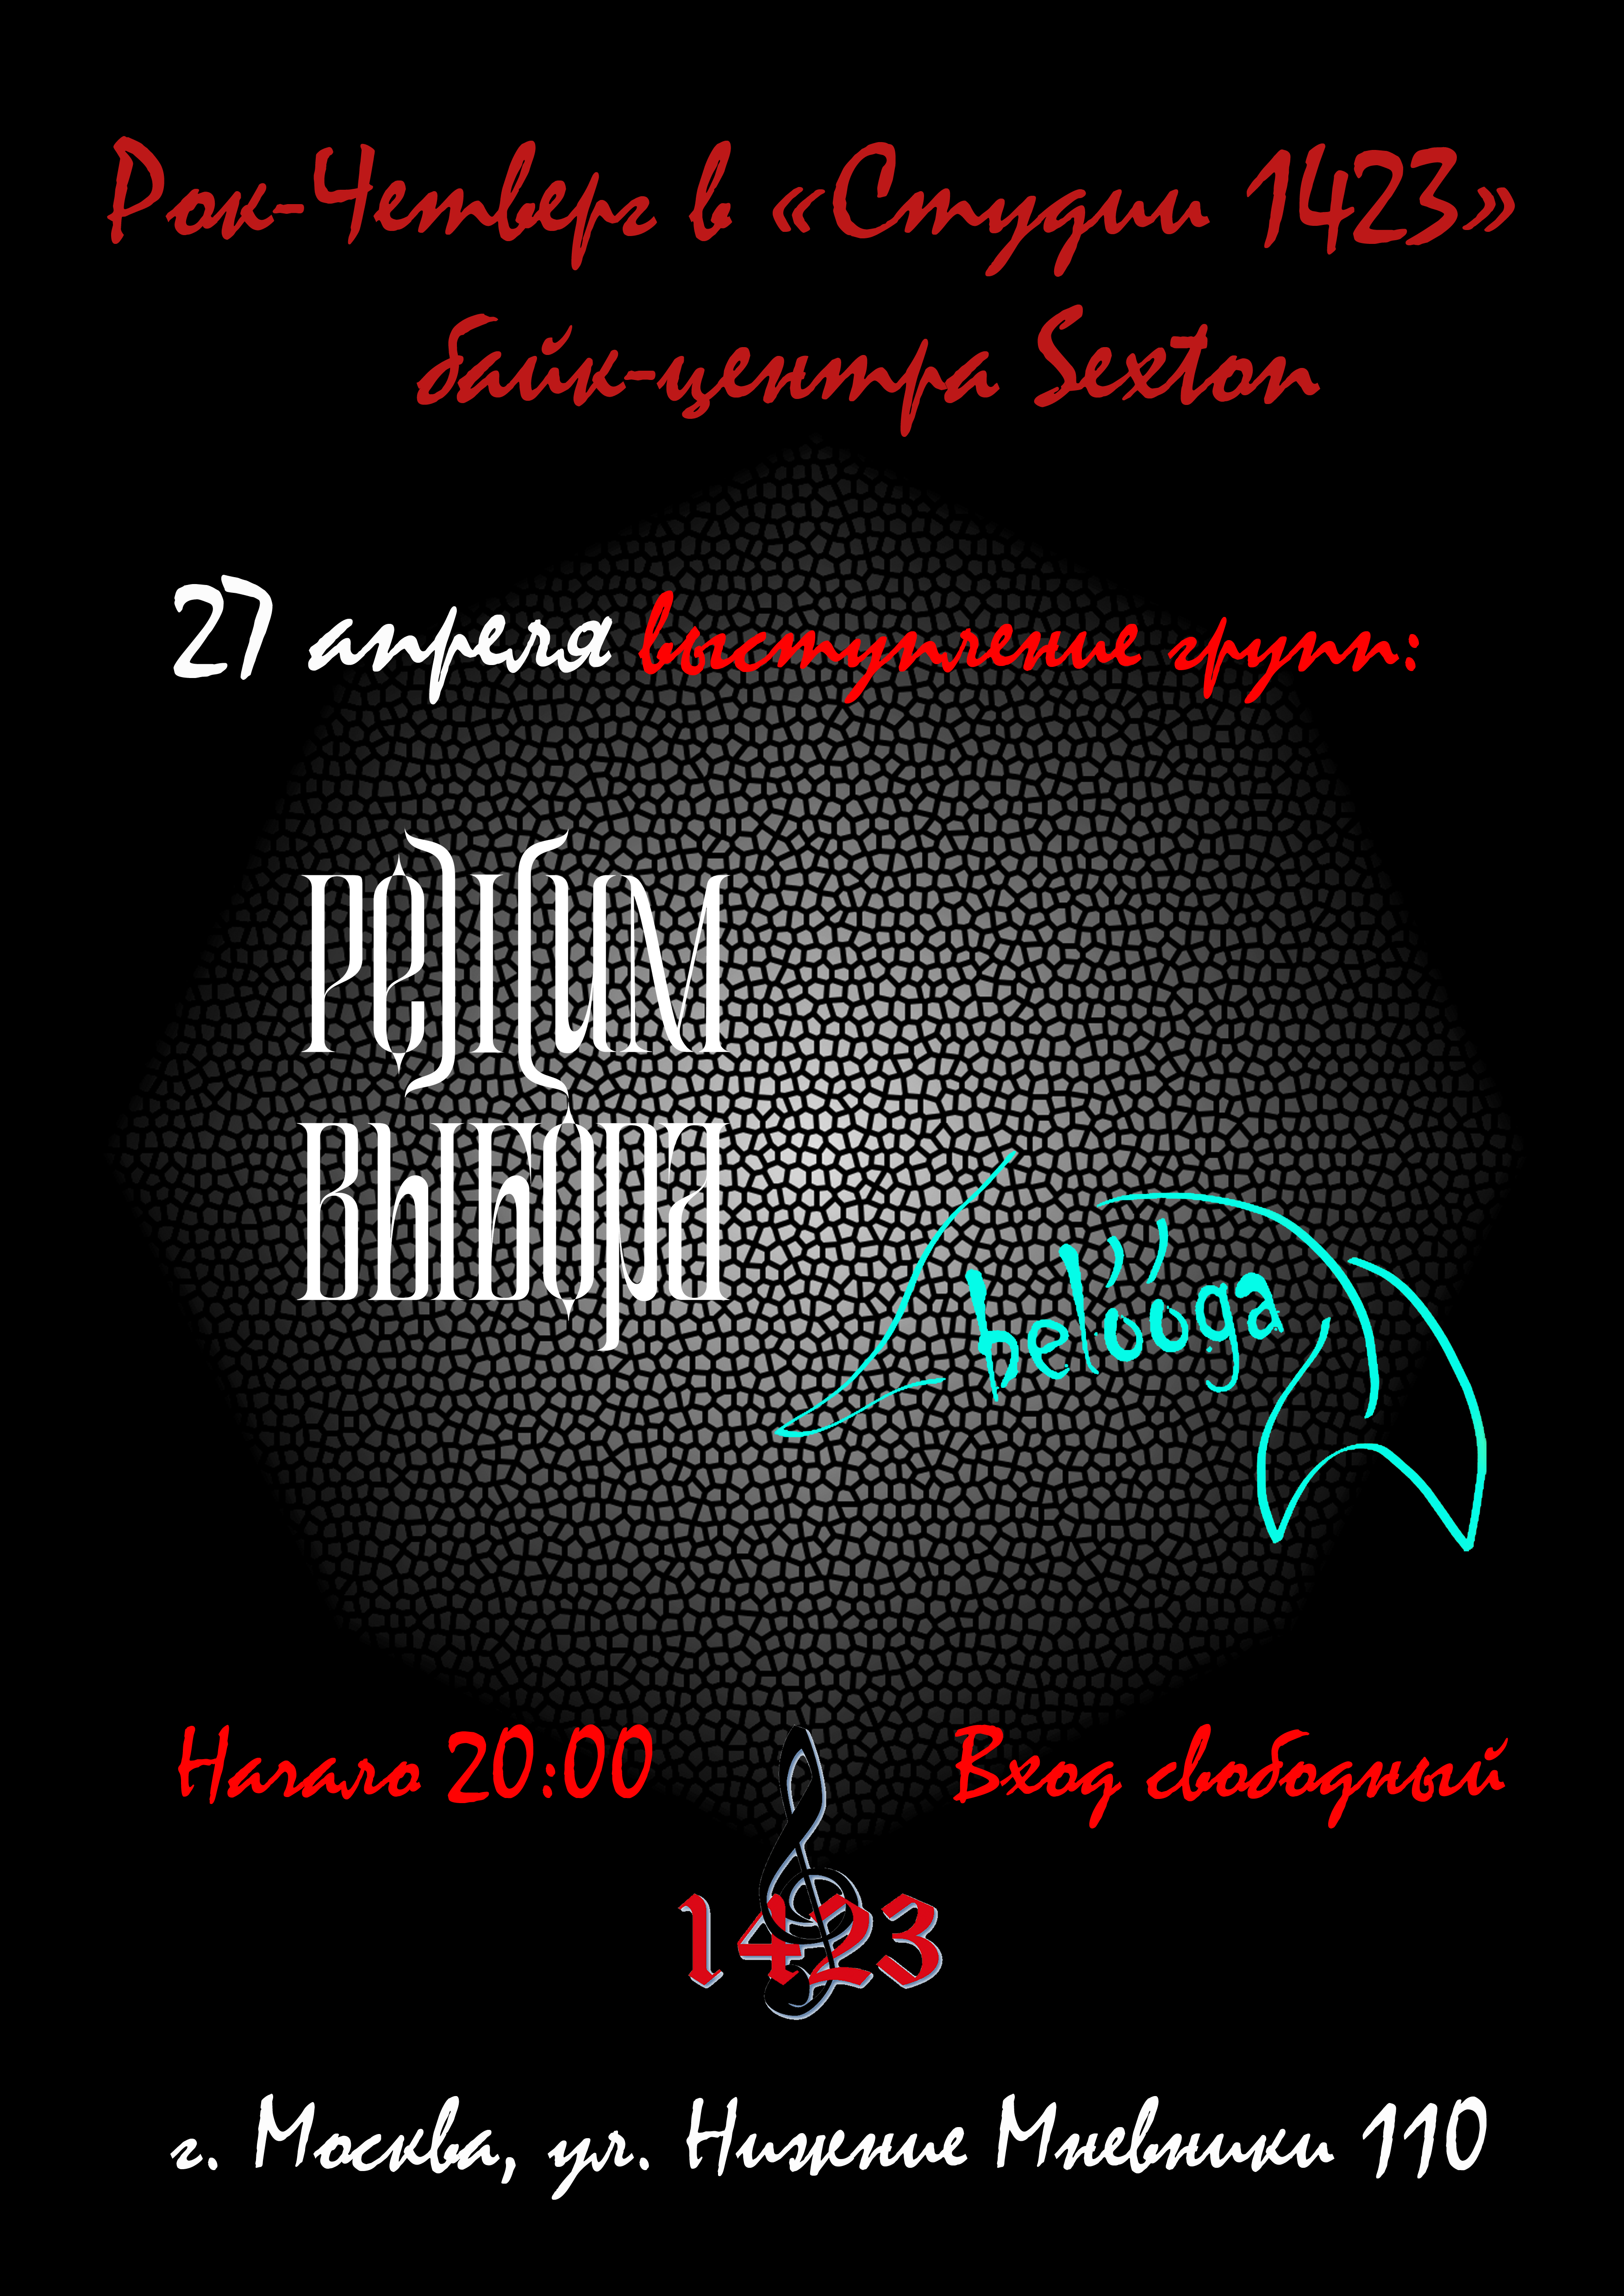 Рок-четверг 27 апреля 2023, концерт в Sexton / Студия 1423, Москва